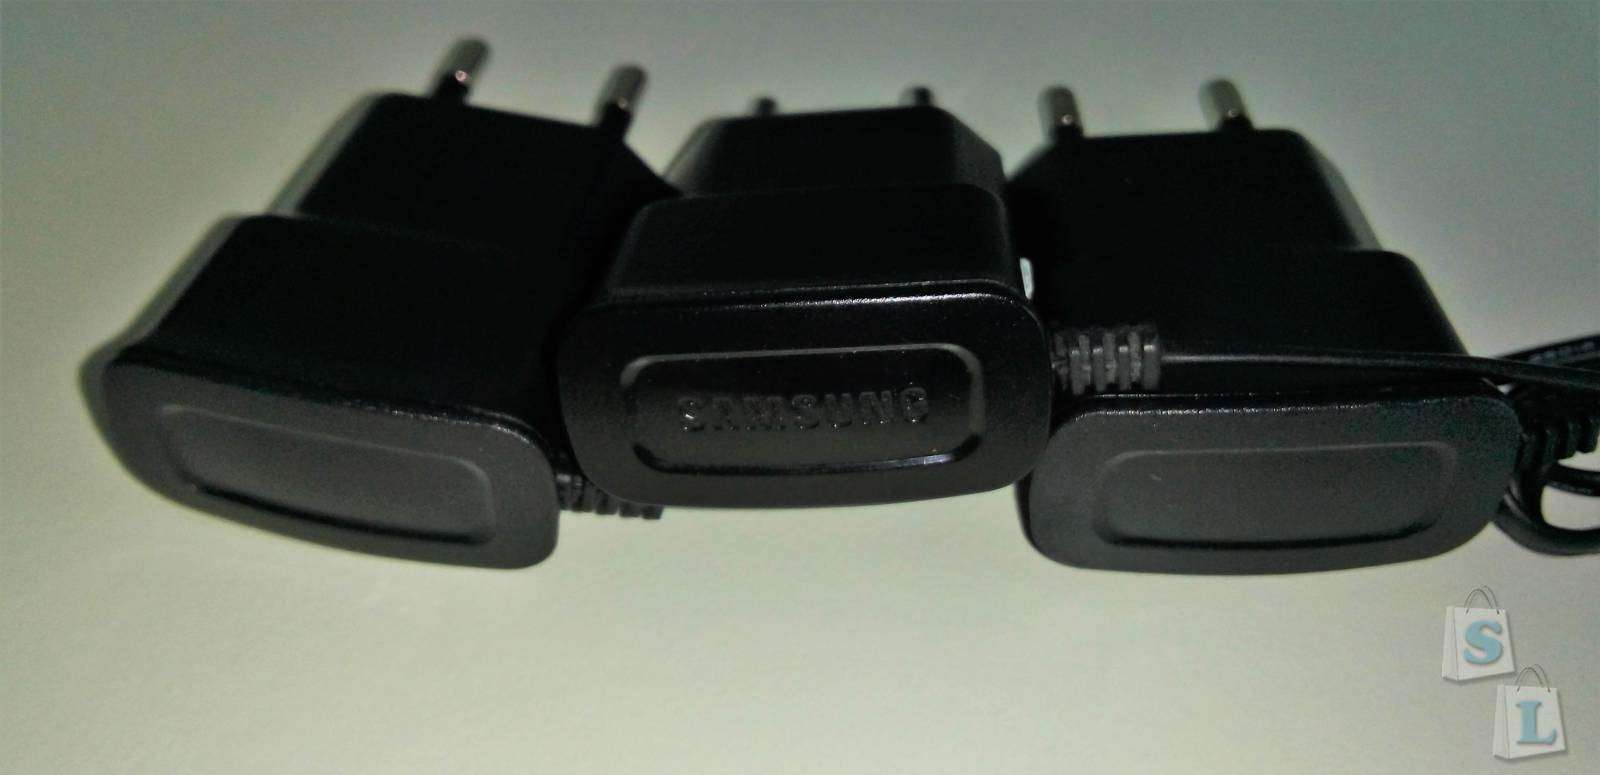 Aliexpress: Некачественные клоны micro USB зарядных Samsung